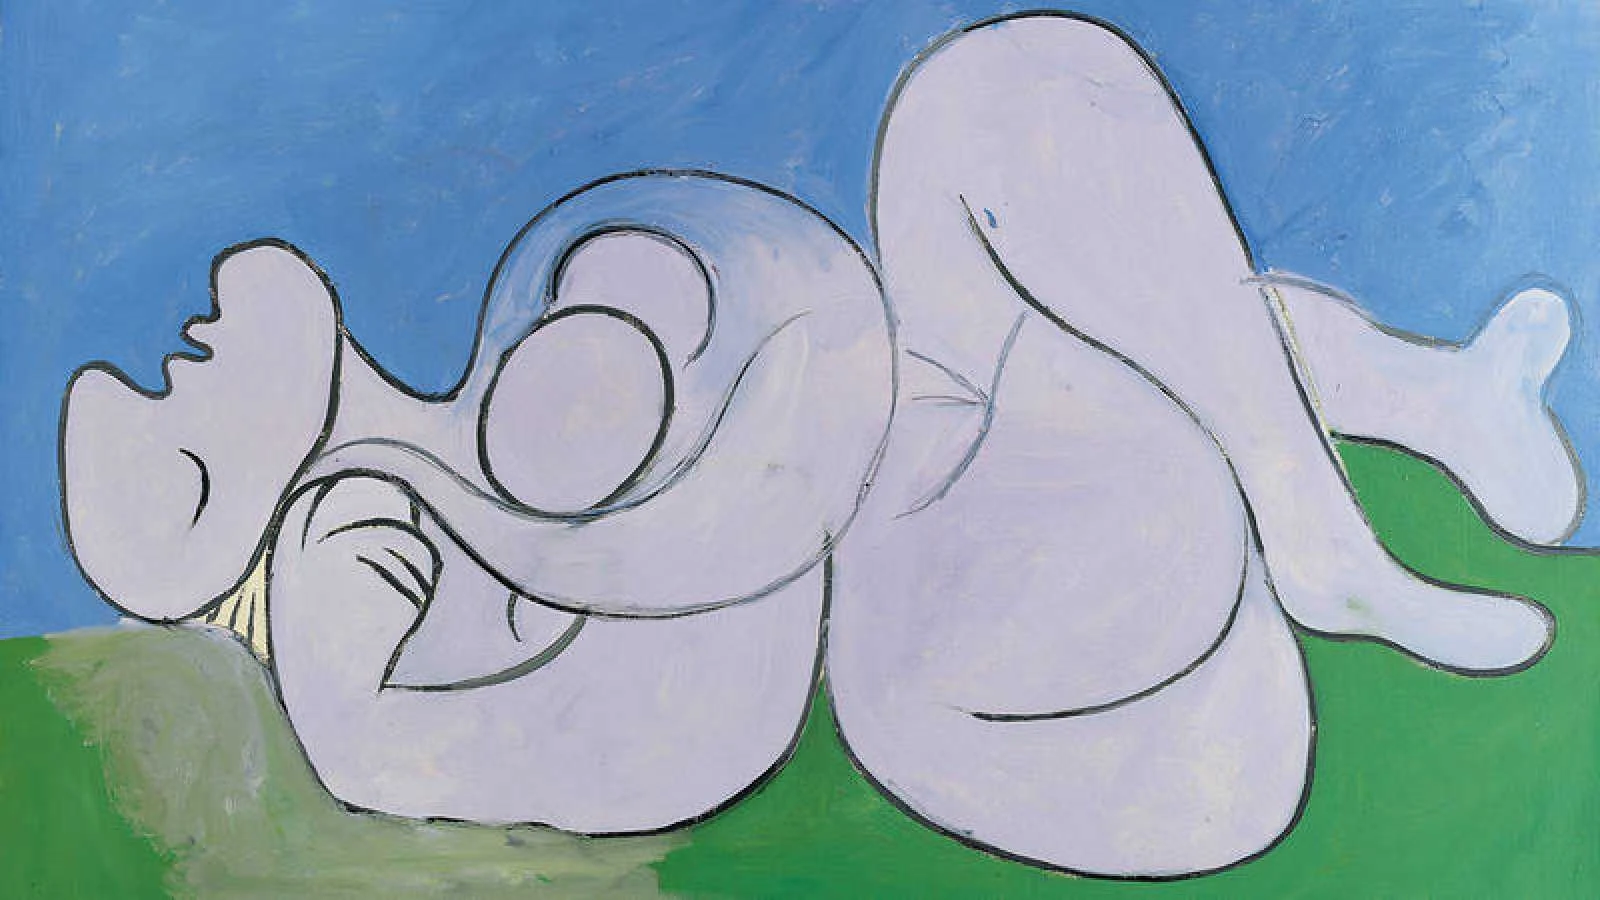 Pablo-Picasso-The-Siesta-1932-Fundaci%25C3%25B3n-Almine-y-Bernard-Ruiz-Picasso-para-el-Arte